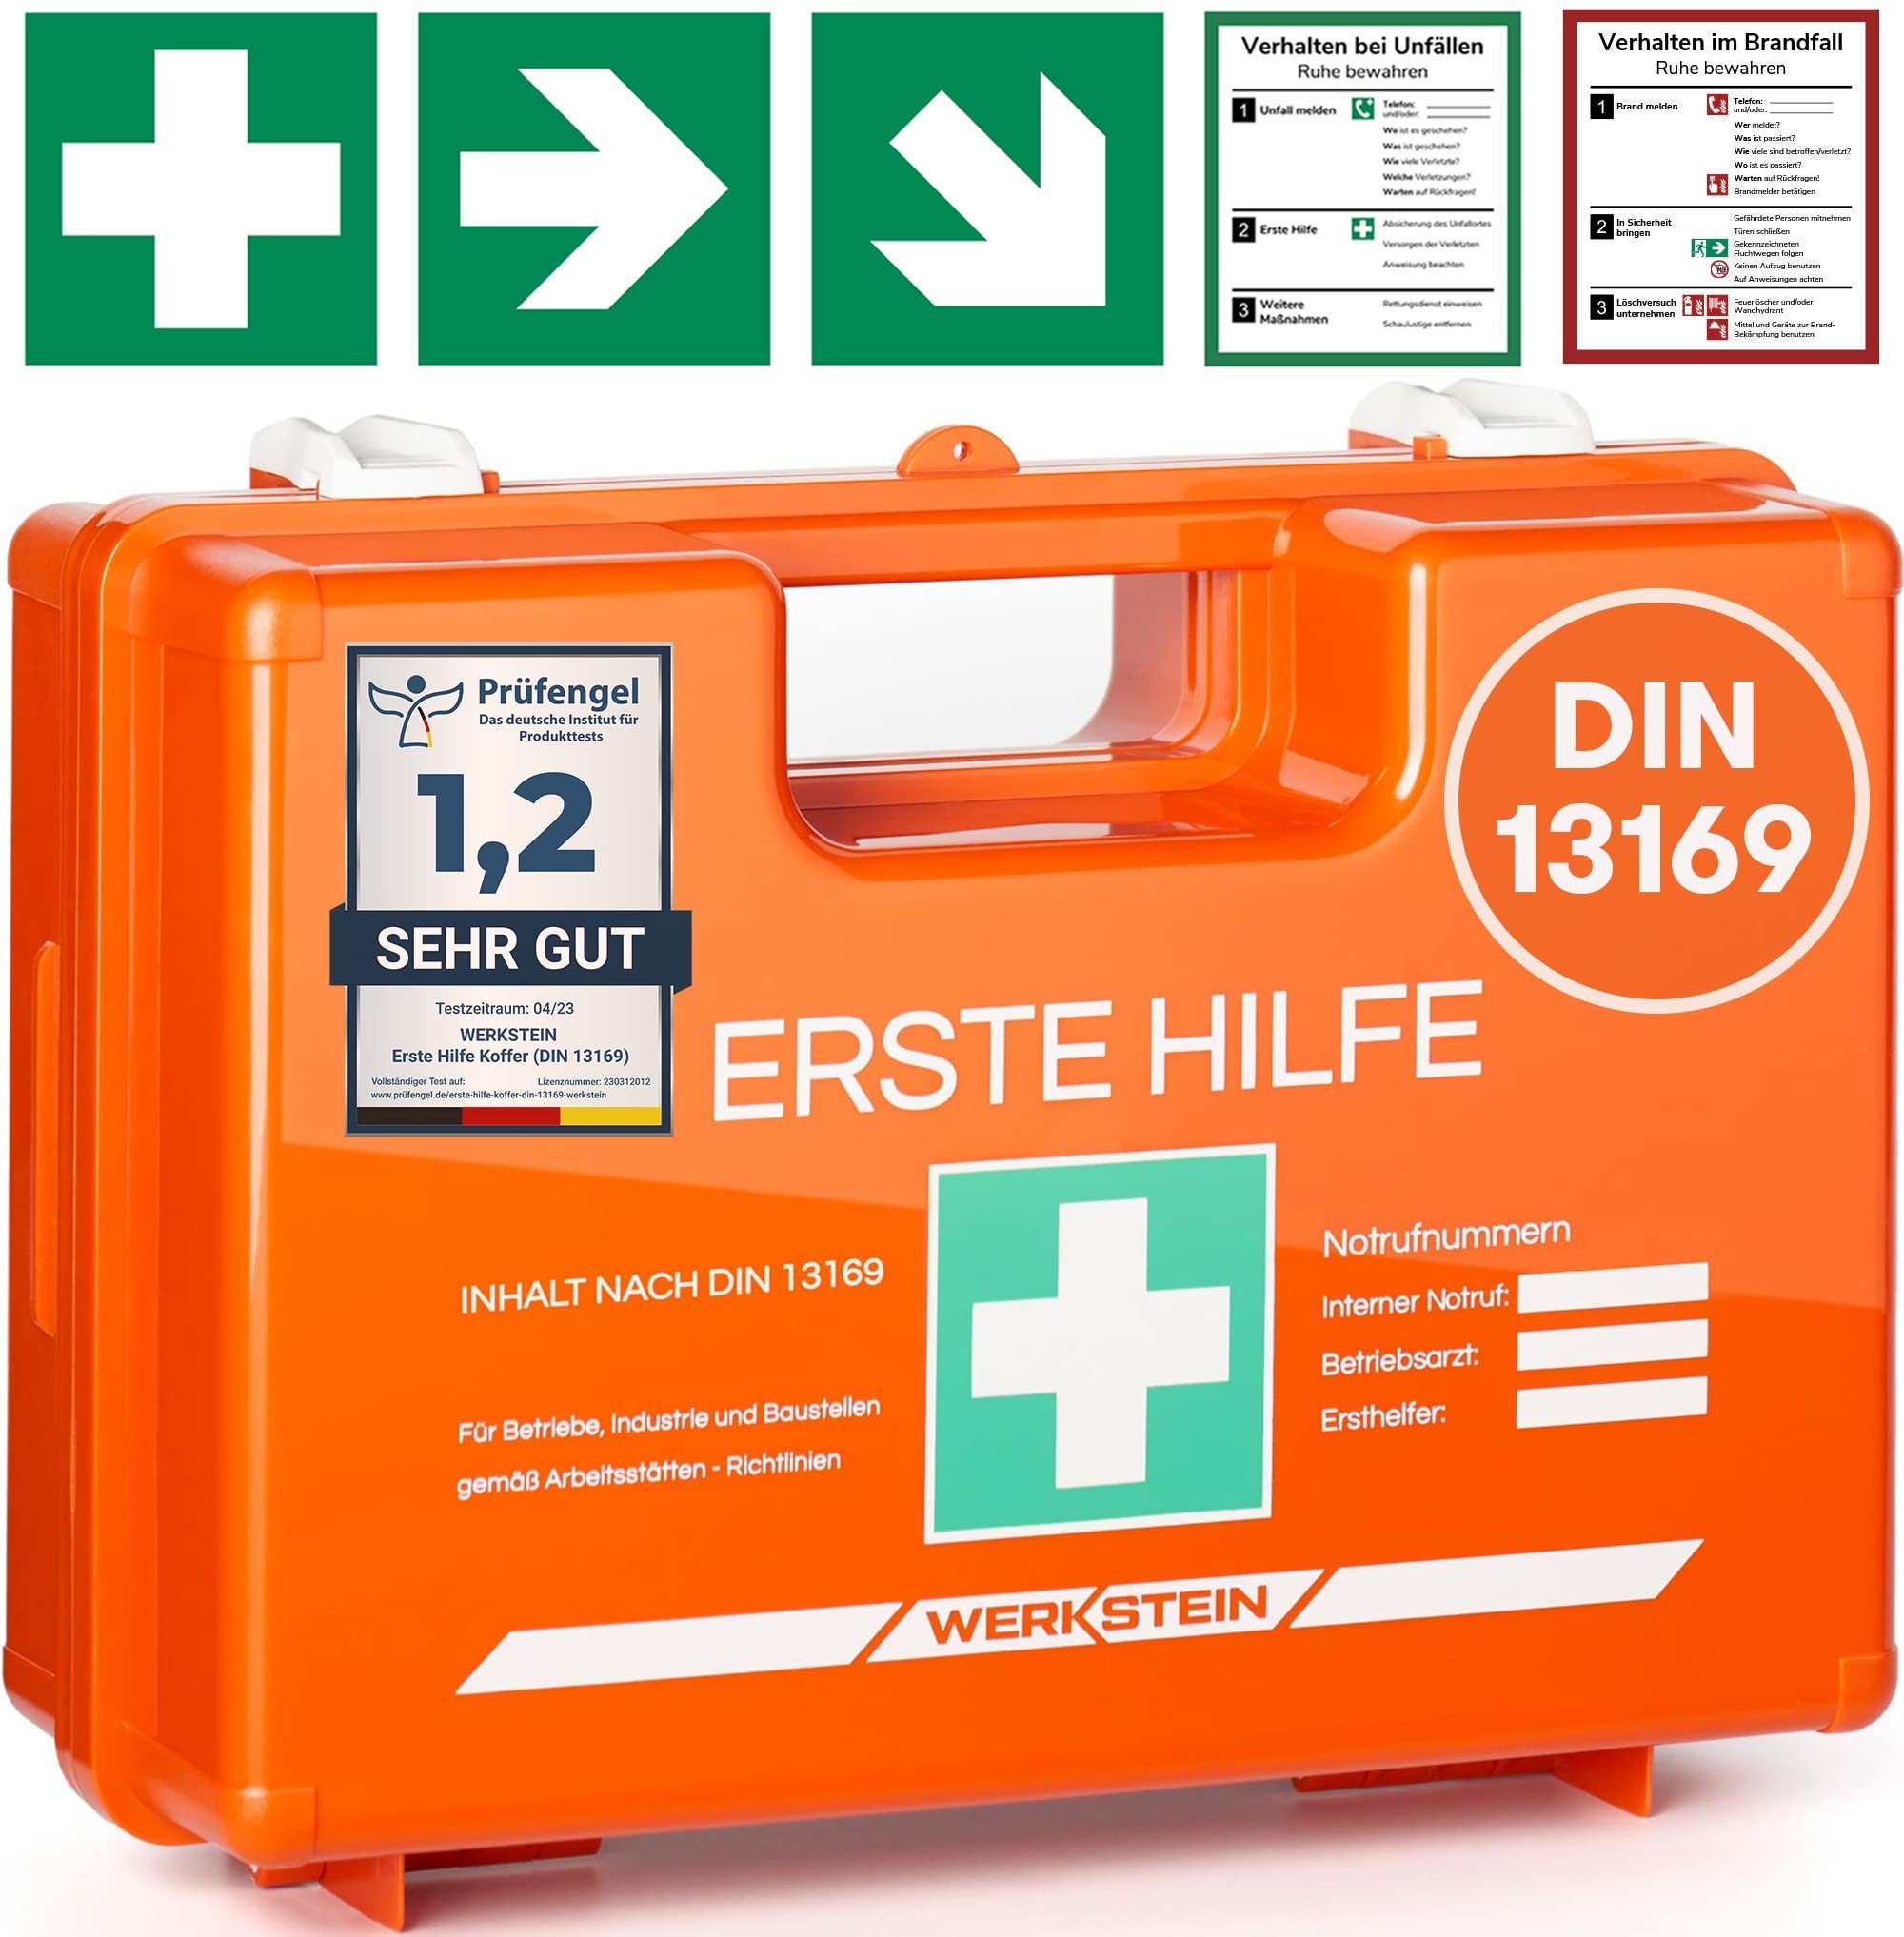 Erste-Hilfe-Koffer nach DIN 13157 online kaufen